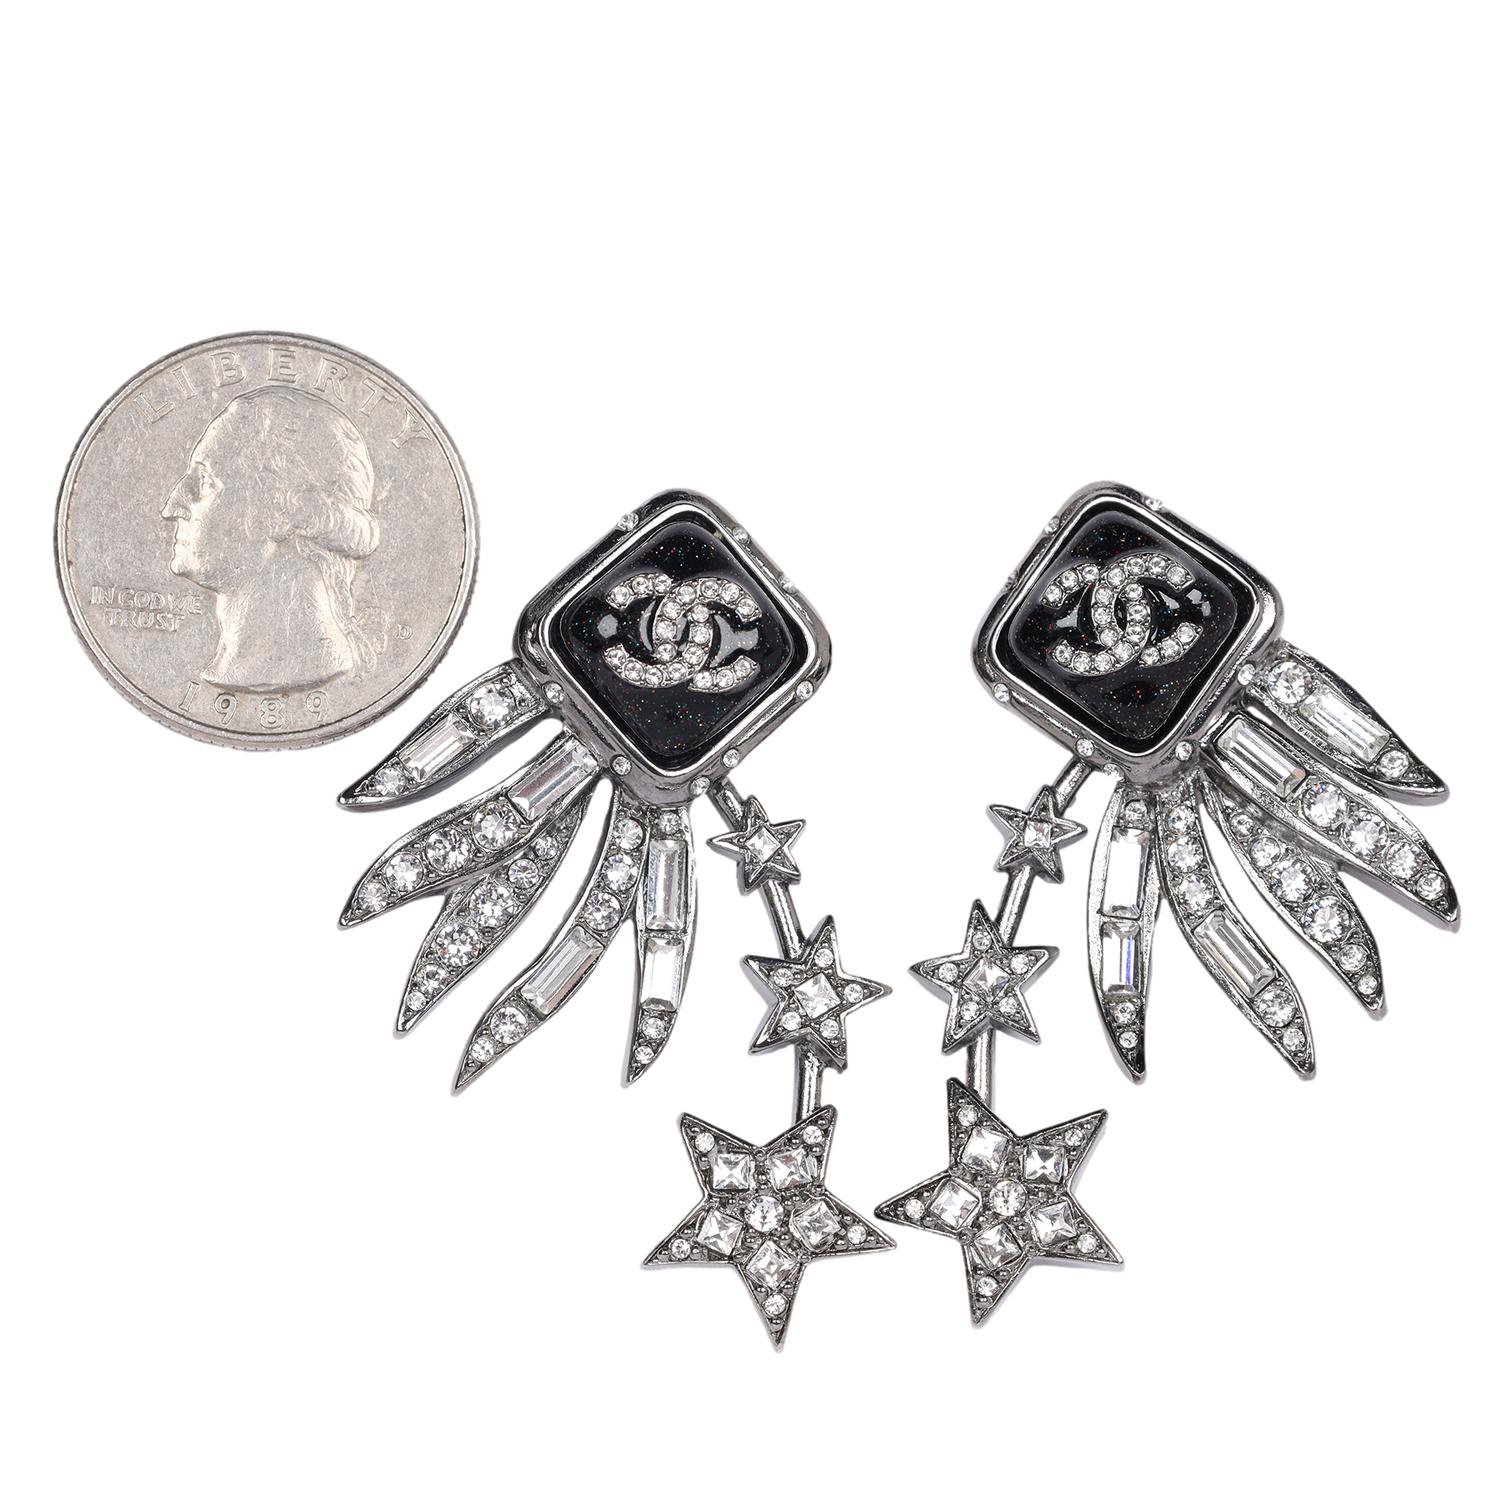 Authentisch, pre-loved Chanel ikonischen CC-Logo Silber Stern Strass Kronleuchter Ohrringe durchbohrt. 

Hergestellt in Frankreich  Gekennzeichnet mit C21S

2,0 